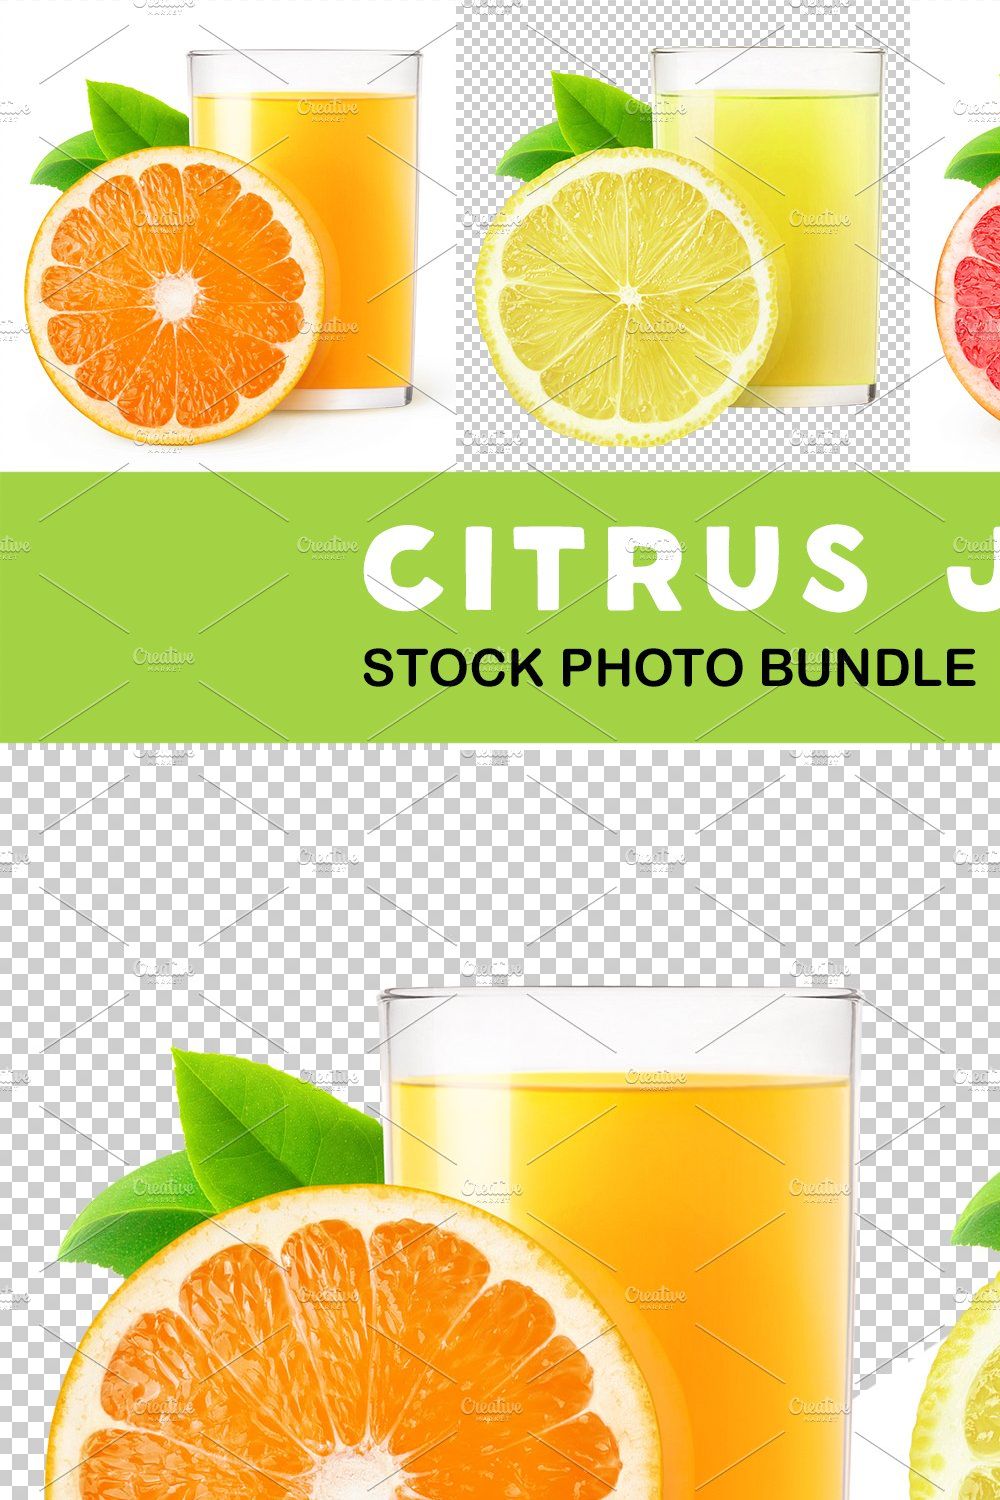 Citrus juices pinterest preview image.